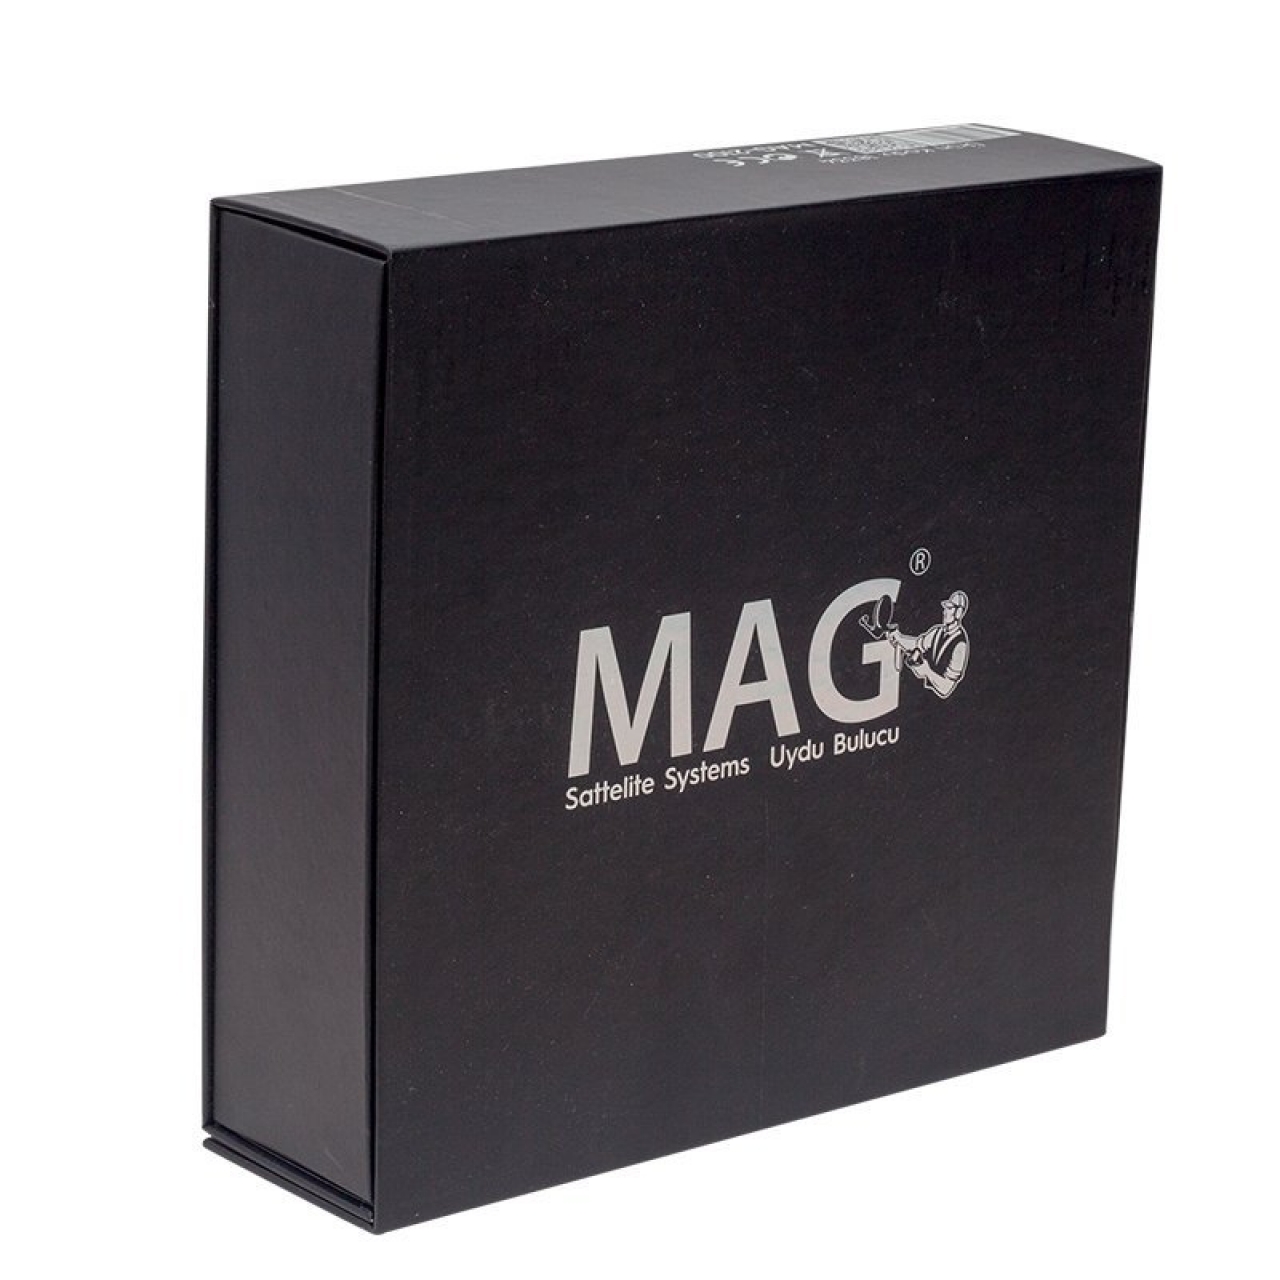 Mag 2100 3.5 inch Görüntülü HD Uydu Yön Bulucu